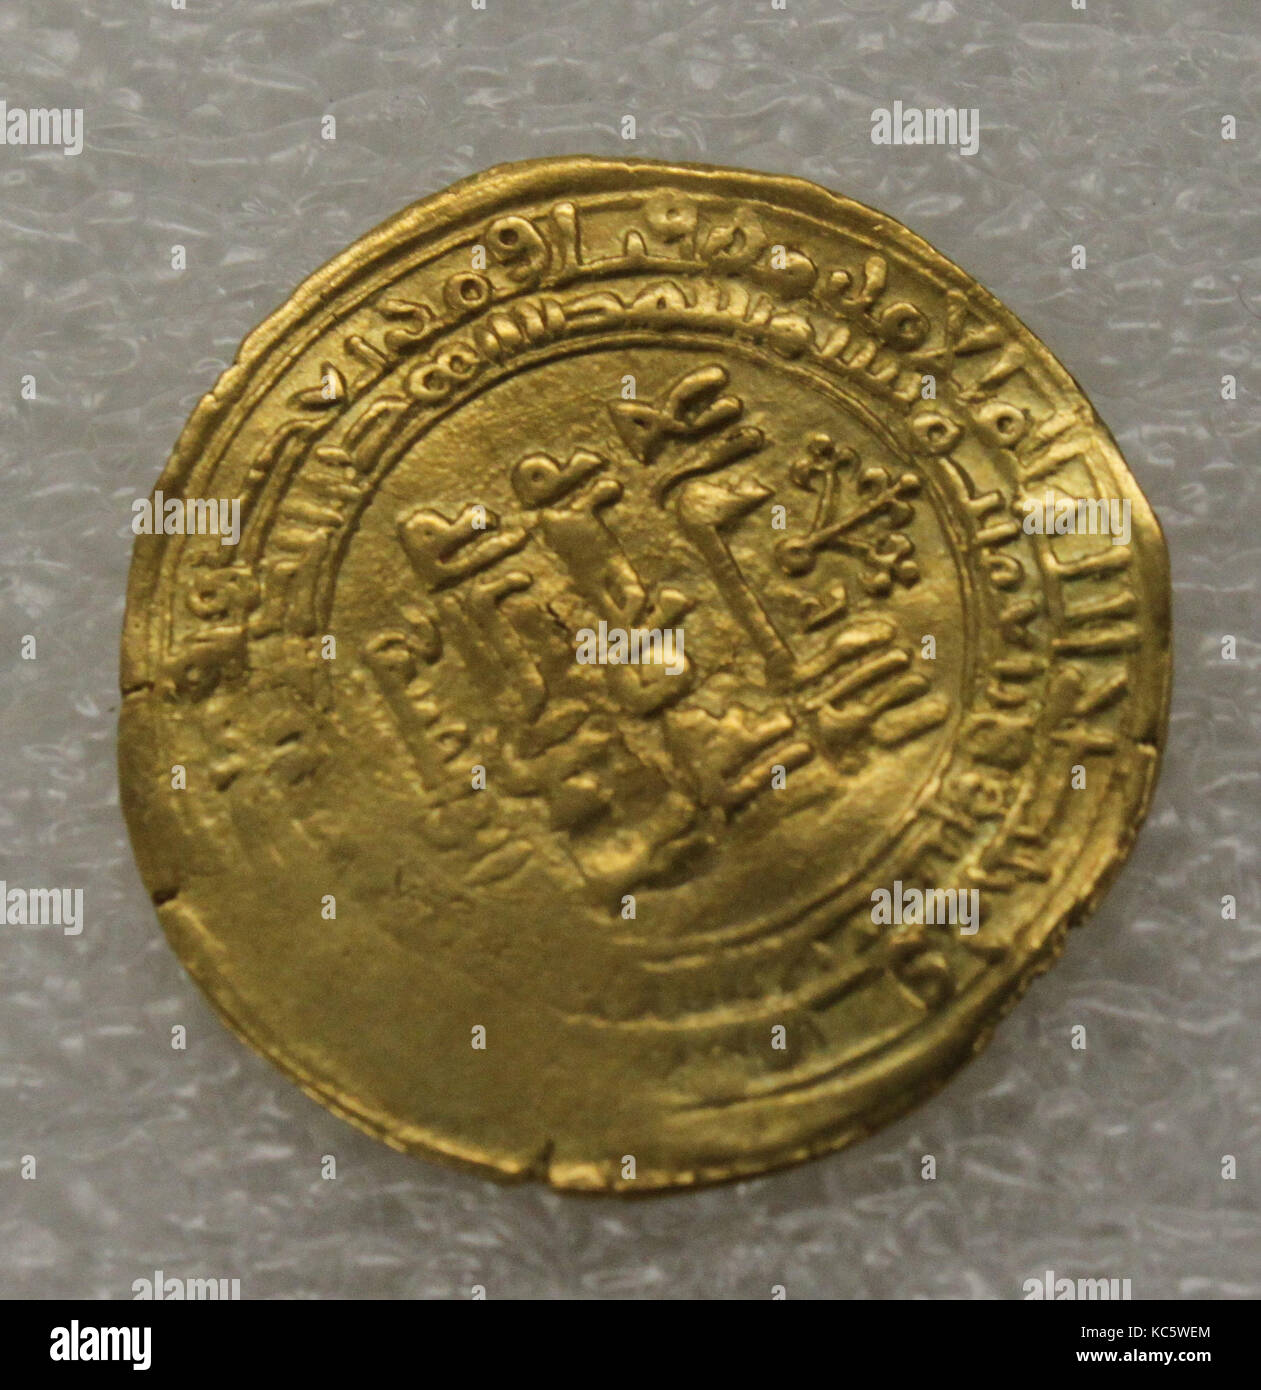 Dinar, datée de 419 de l'Hégire/ A.D. 1028, en Iran (l'Afghanistan moderne), de l'or, les pièces de monnaie Banque D'Images